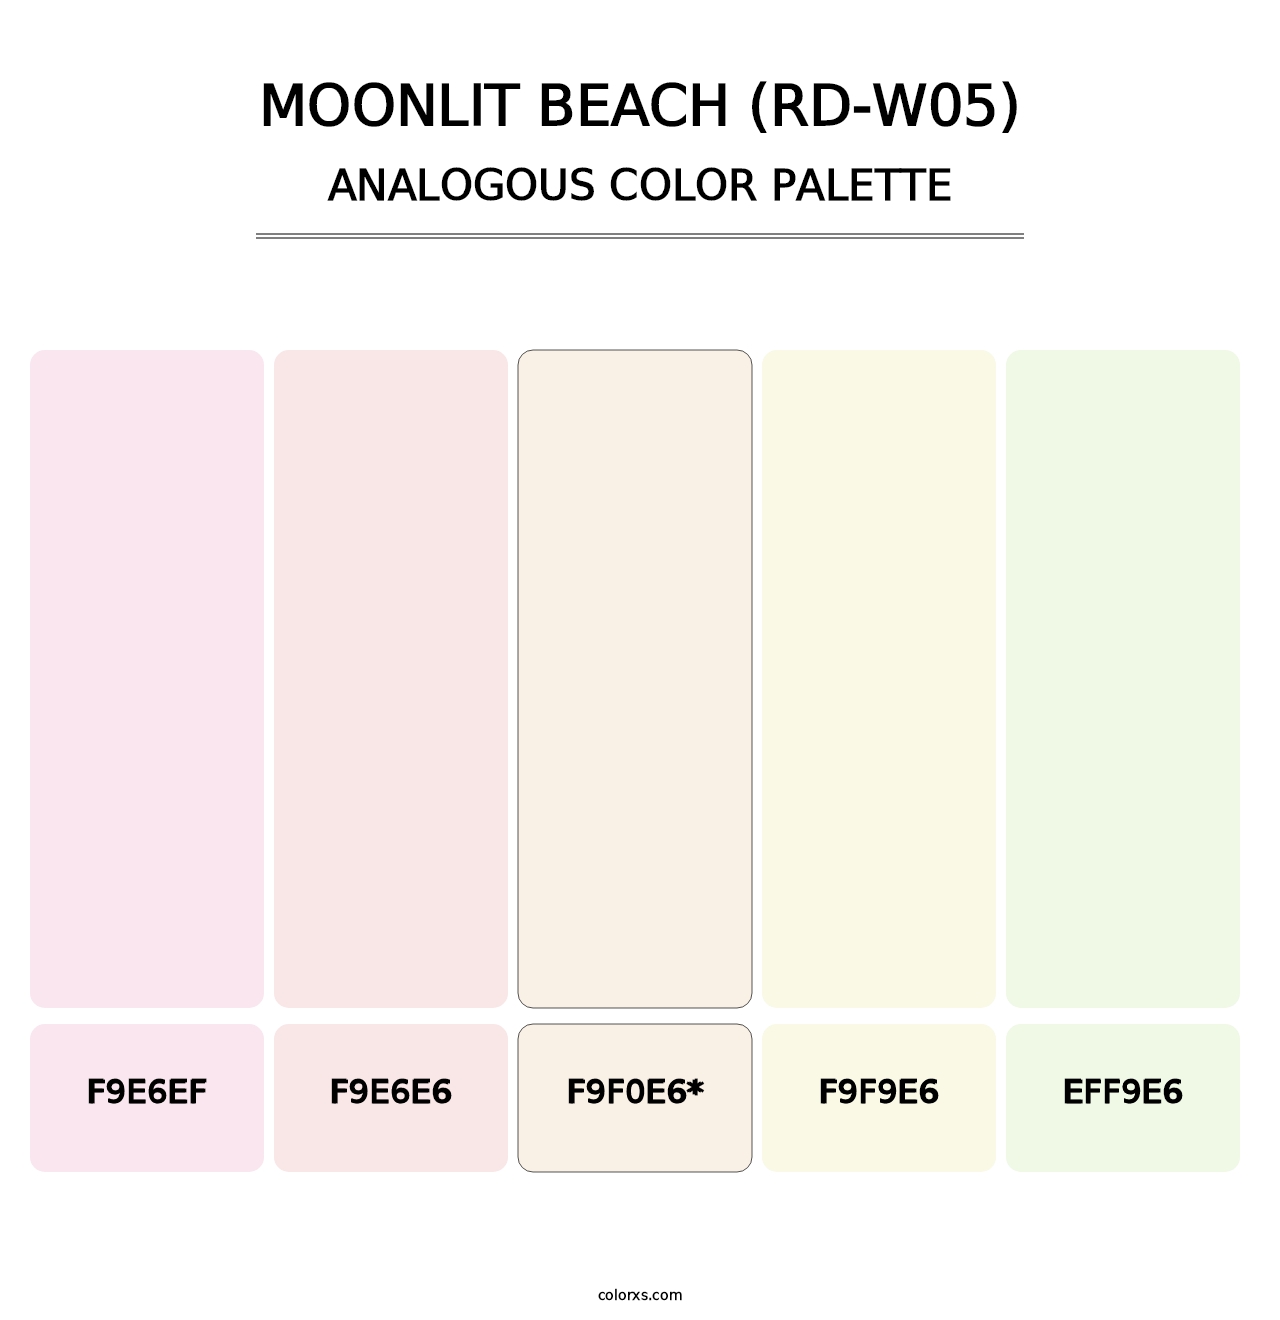 Moonlit Beach (RD-W05) - Analogous Color Palette